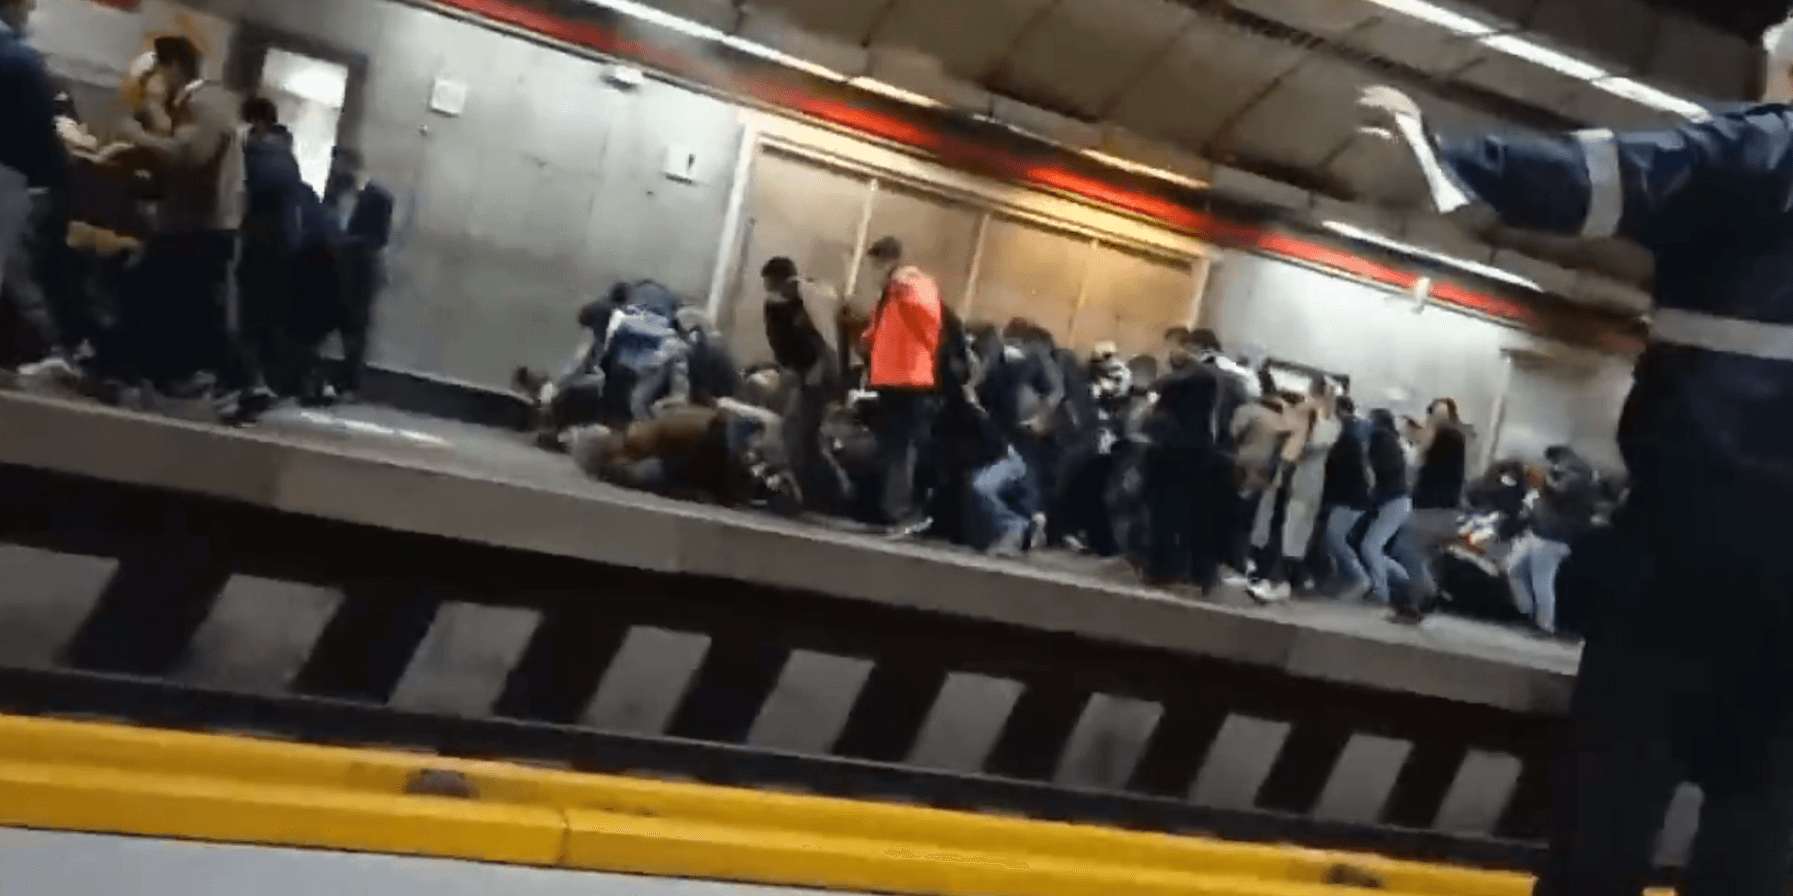 En video har börjat cirkulera på sociala medier som uppges visa hur människor på en tunnelbanestation i Teheran flyr när den iranska säkerhetspolisen börjar skjuta mot dem. 